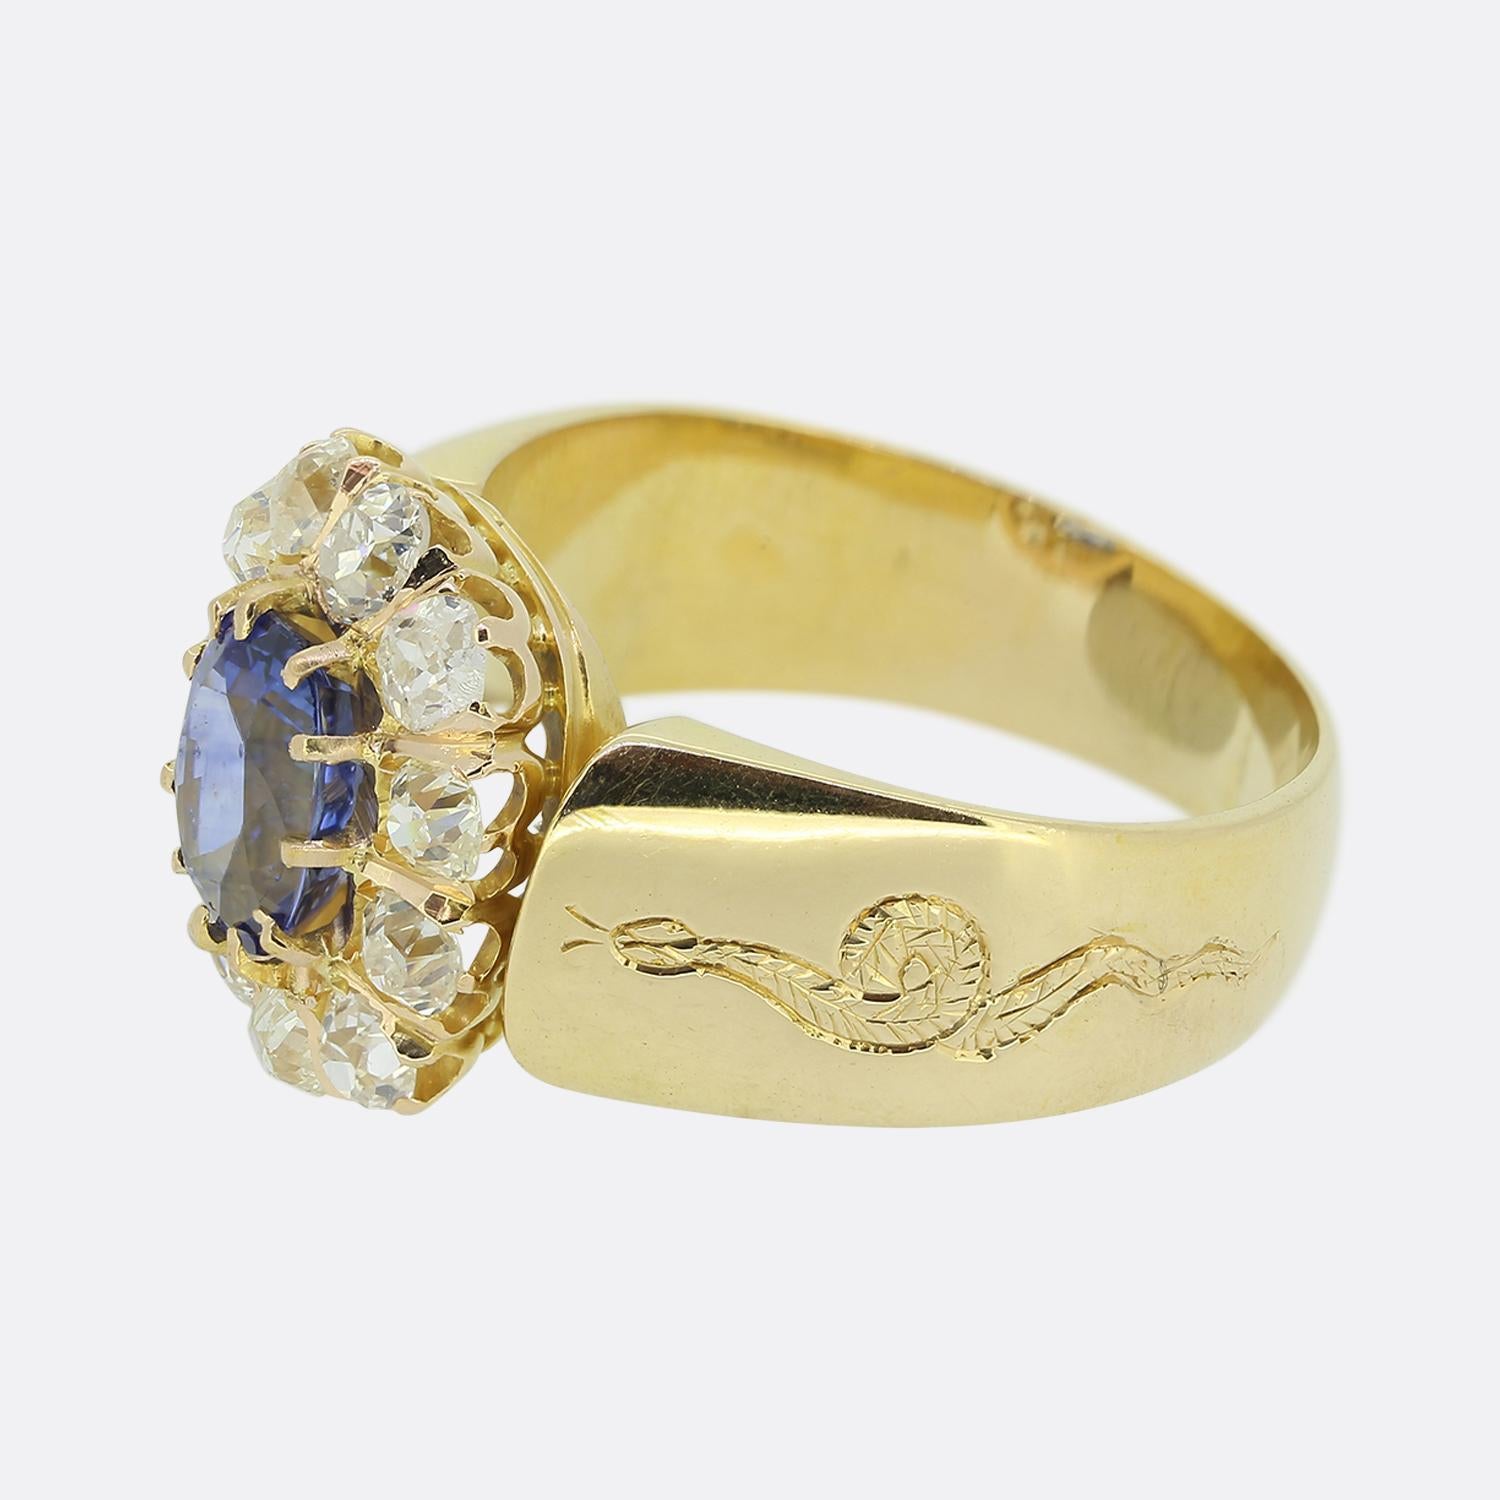 Hier haben wir einen prächtigen Saphir- und Diamant-Cluster-Ring. Dieses Vintage-Stück wurde aus warmem 18-karätigem Gelbgold gefertigt und zeigt einen atemberaubenden ovalen, facettierten natürlichen Saphir in der Mitte des Gesichts. Der Hauptstein